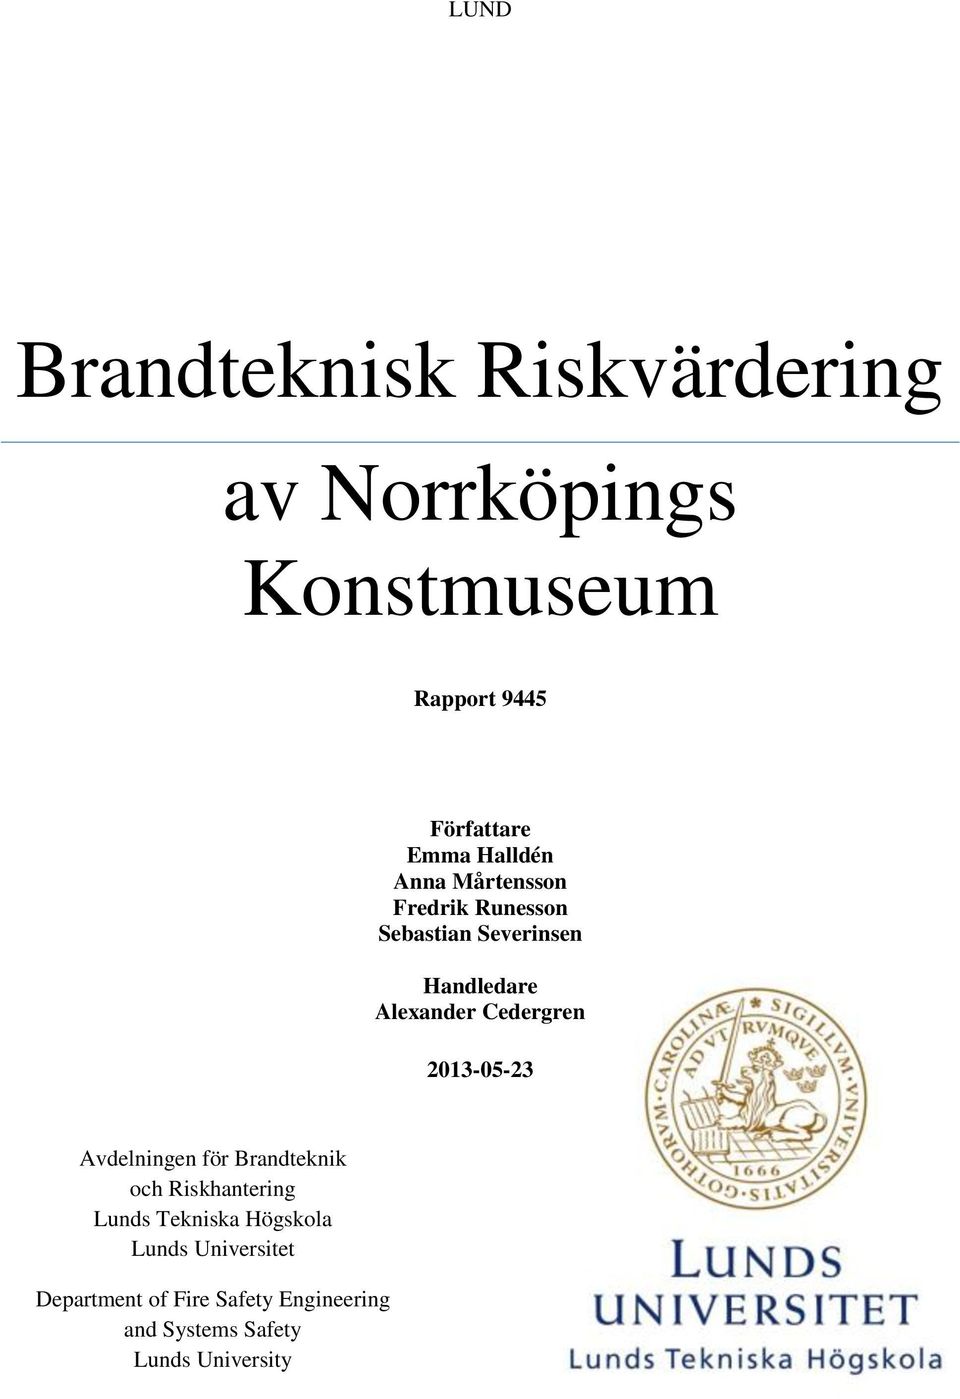 Cedergren 2013-05-23 Avdelningen för Brandteknik och Riskhantering Lunds Tekniska